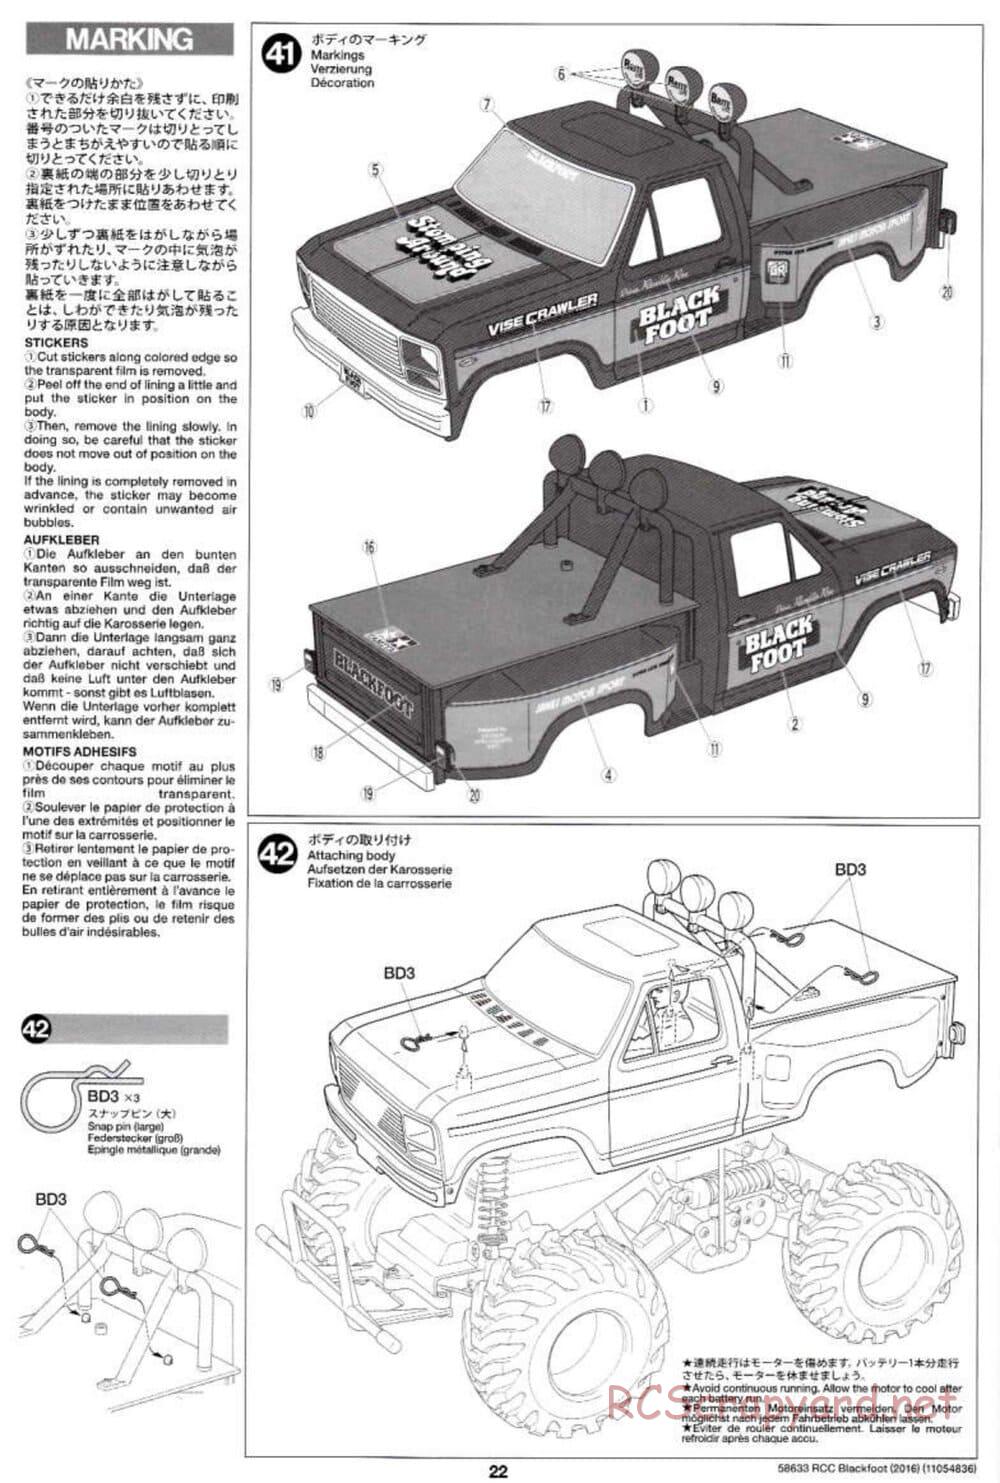 Tamiya - Blackfoot 2016 - ORV Chassis - Manual - Page 22